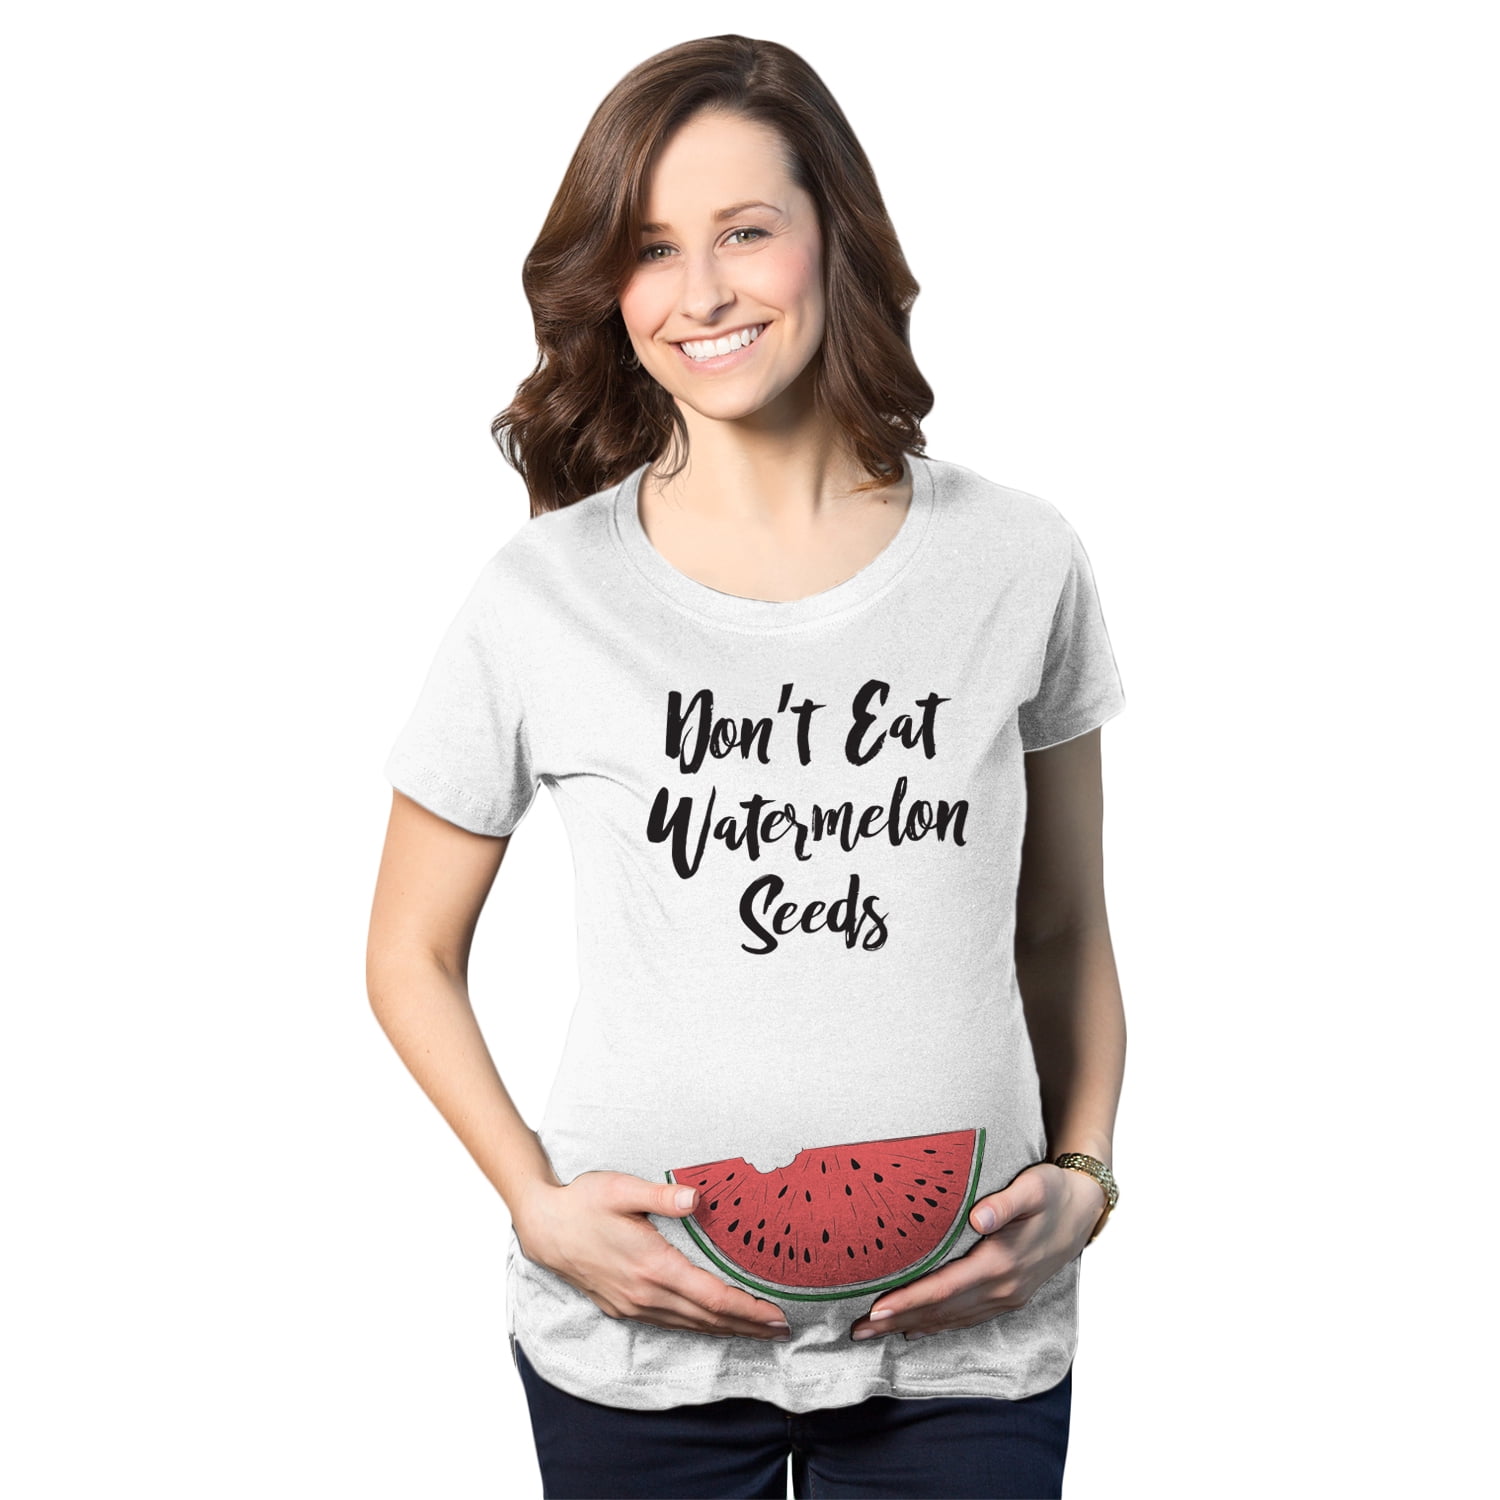 DON'T EAT WATERMELON SEEDS Unisex Cotton T-Shirt Tee Shirt 